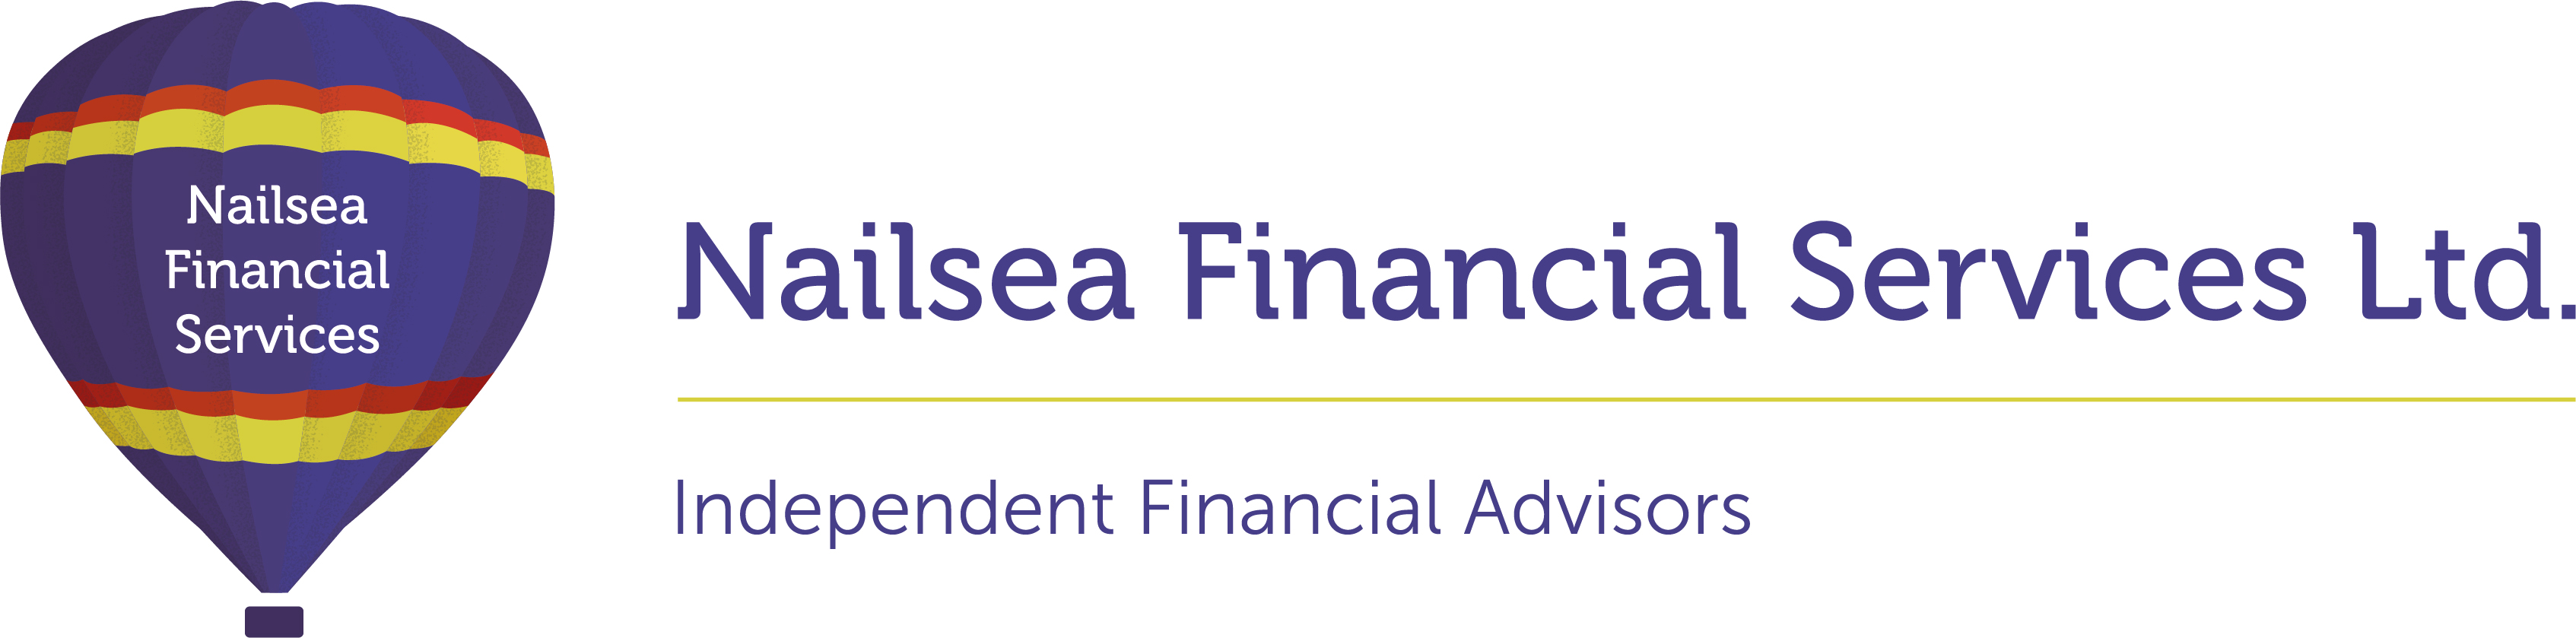 Nailsea Financial Services Logo